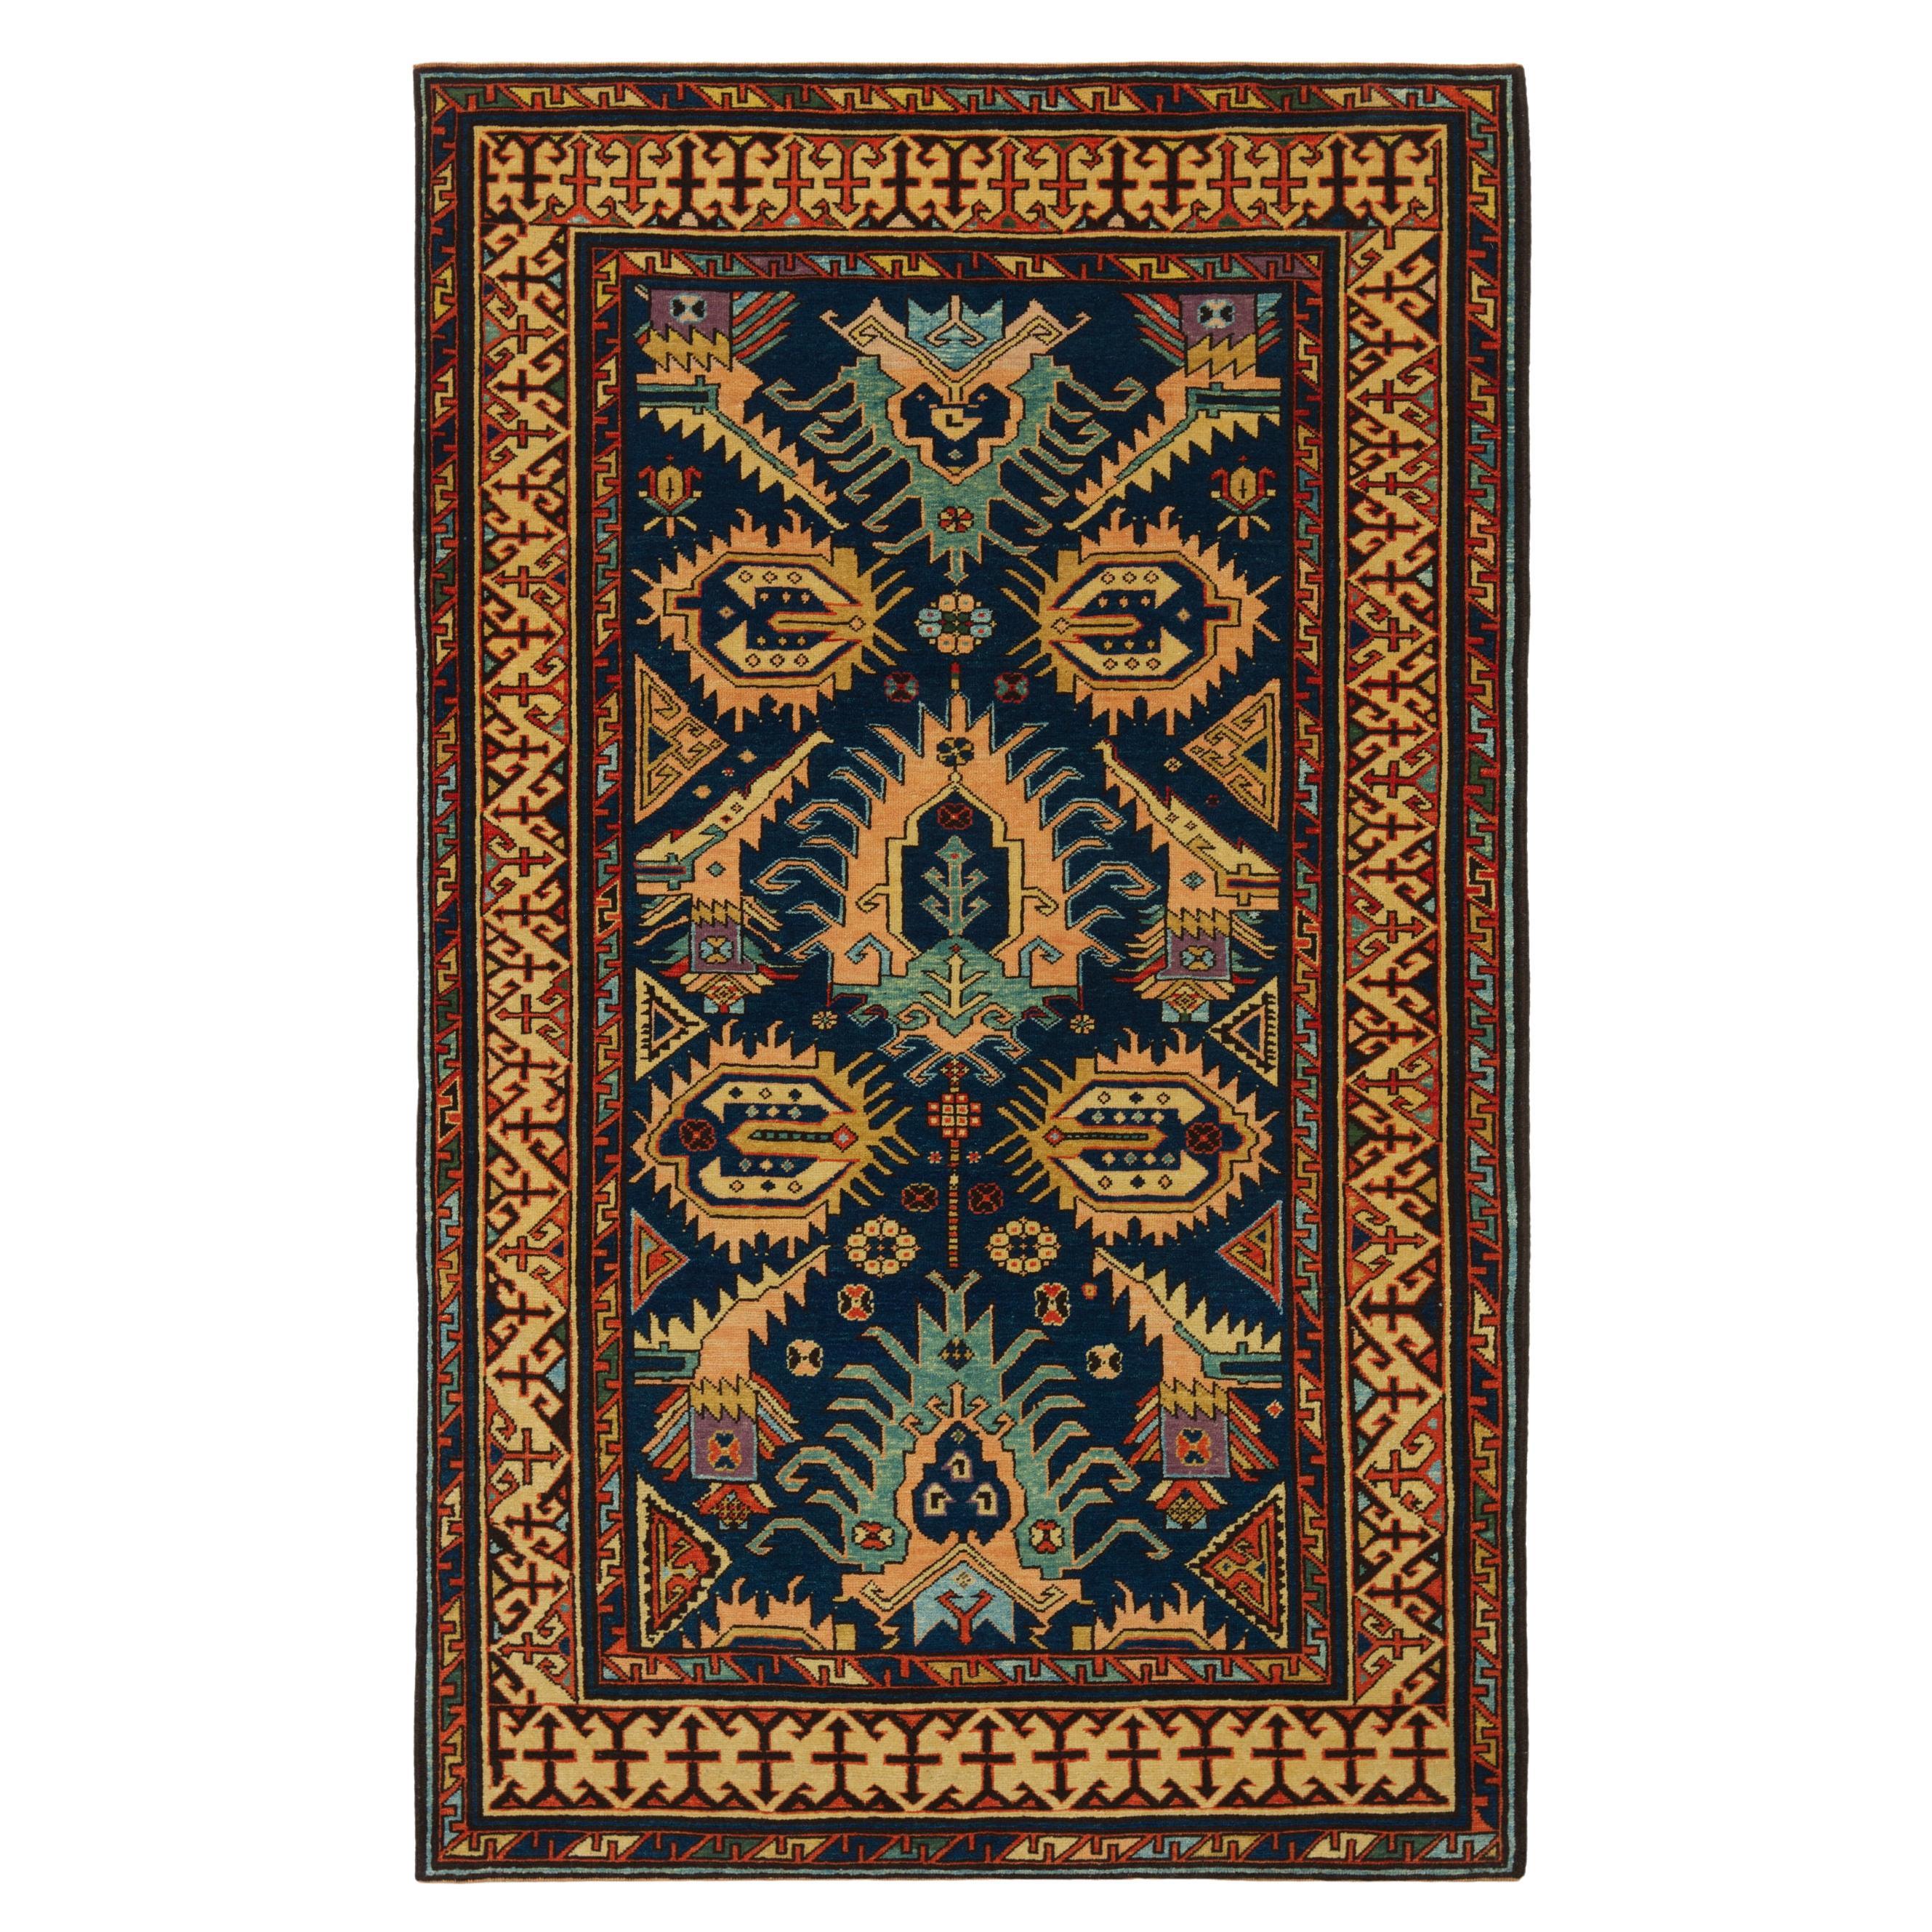 Ararat Rugs Bidjov Kazak Rug Caucasian Antique Revival Carpet Natural Dye